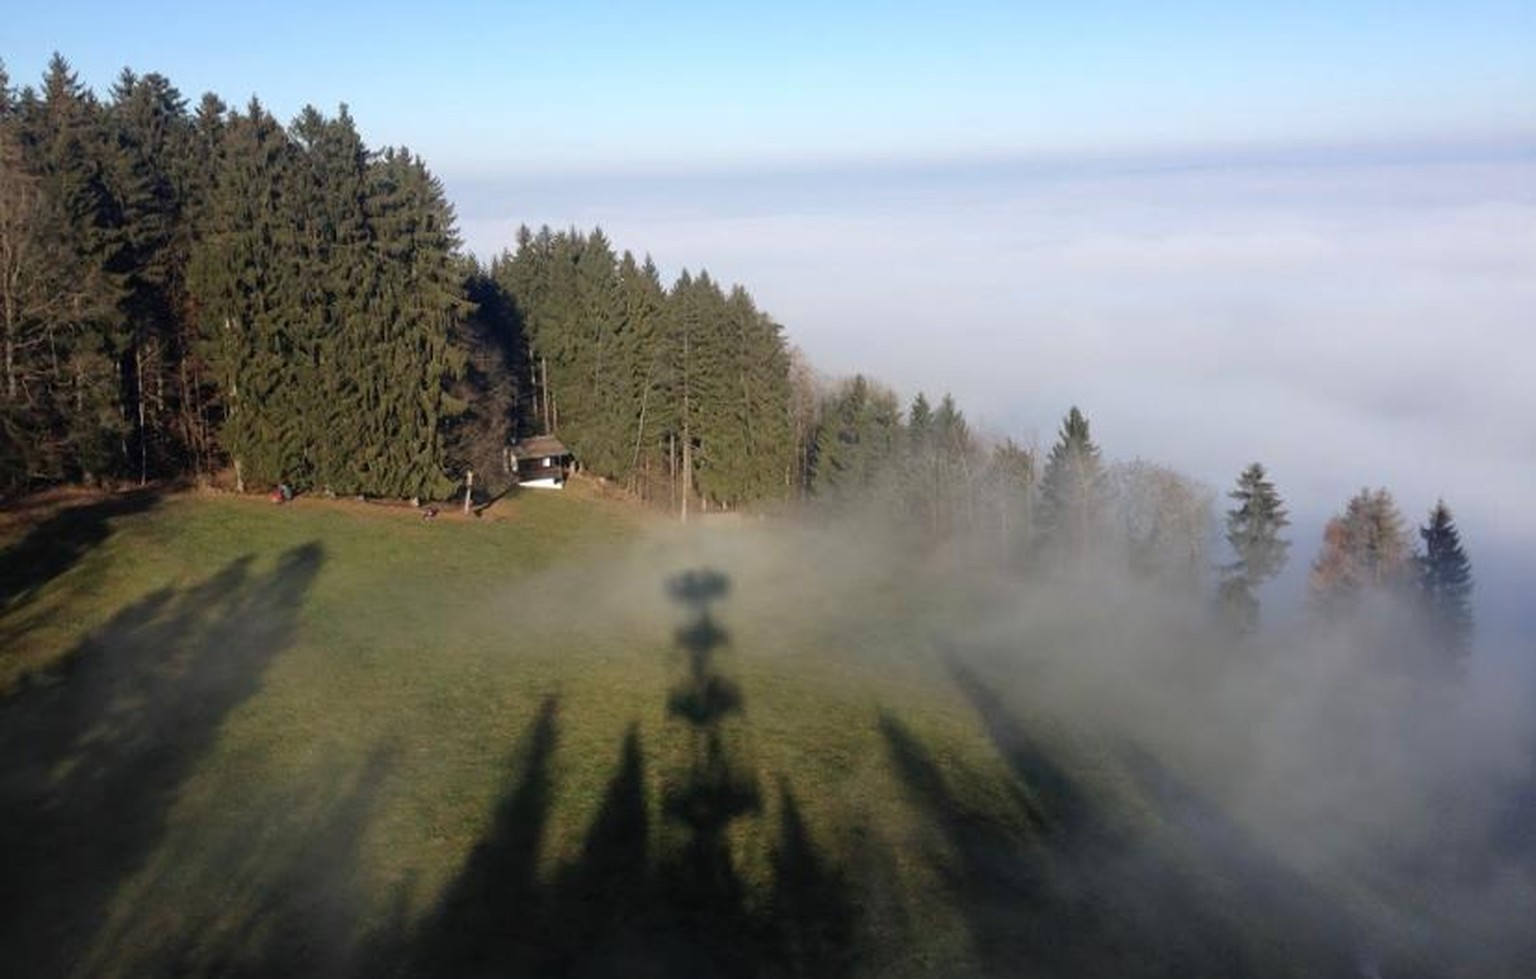 Glück hat, wer auf einem Berg noch einen Aussichtsturm findet, der dich dann gerade noch aus dem Nebel auftauchen lässt. So wie hier geschehen an einem schönen Tag im Herbst auf dem Pfannenstiel.